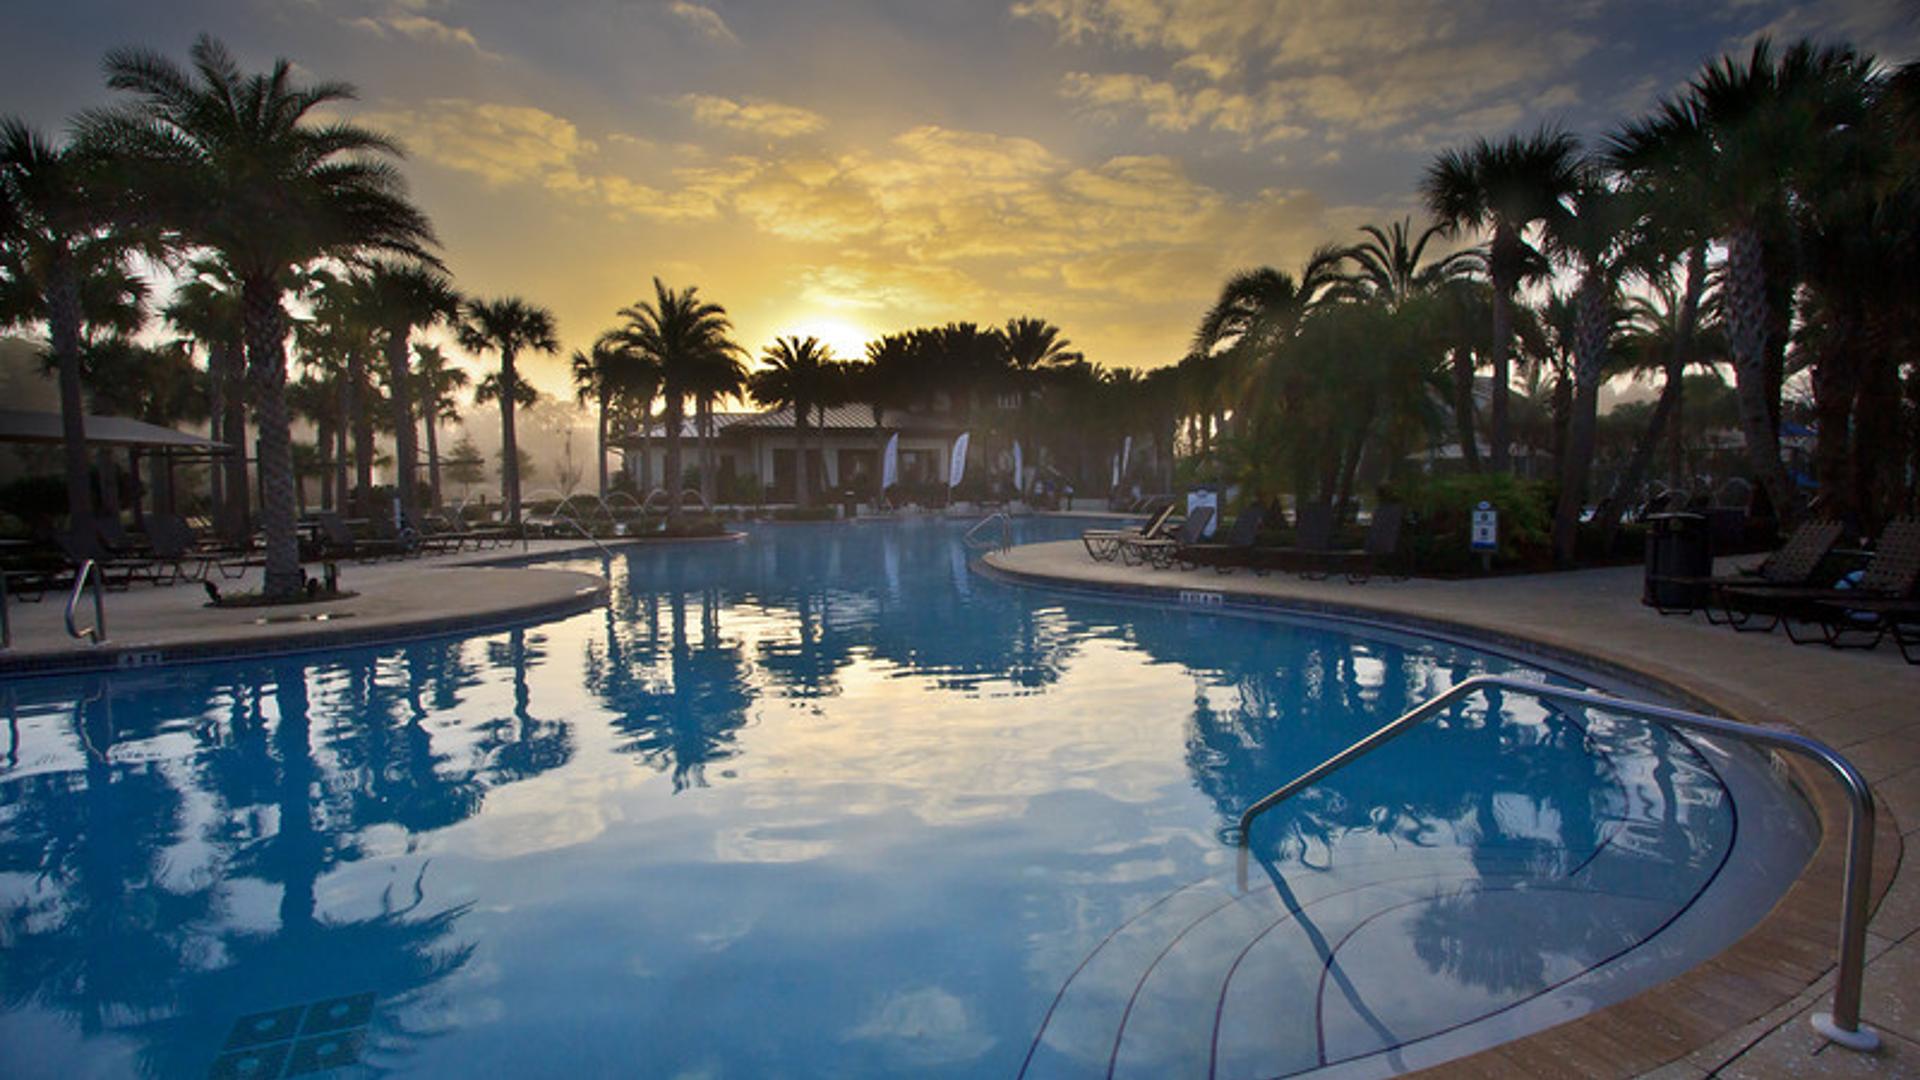 Enjoy gorgeous Florida sunsets poolside